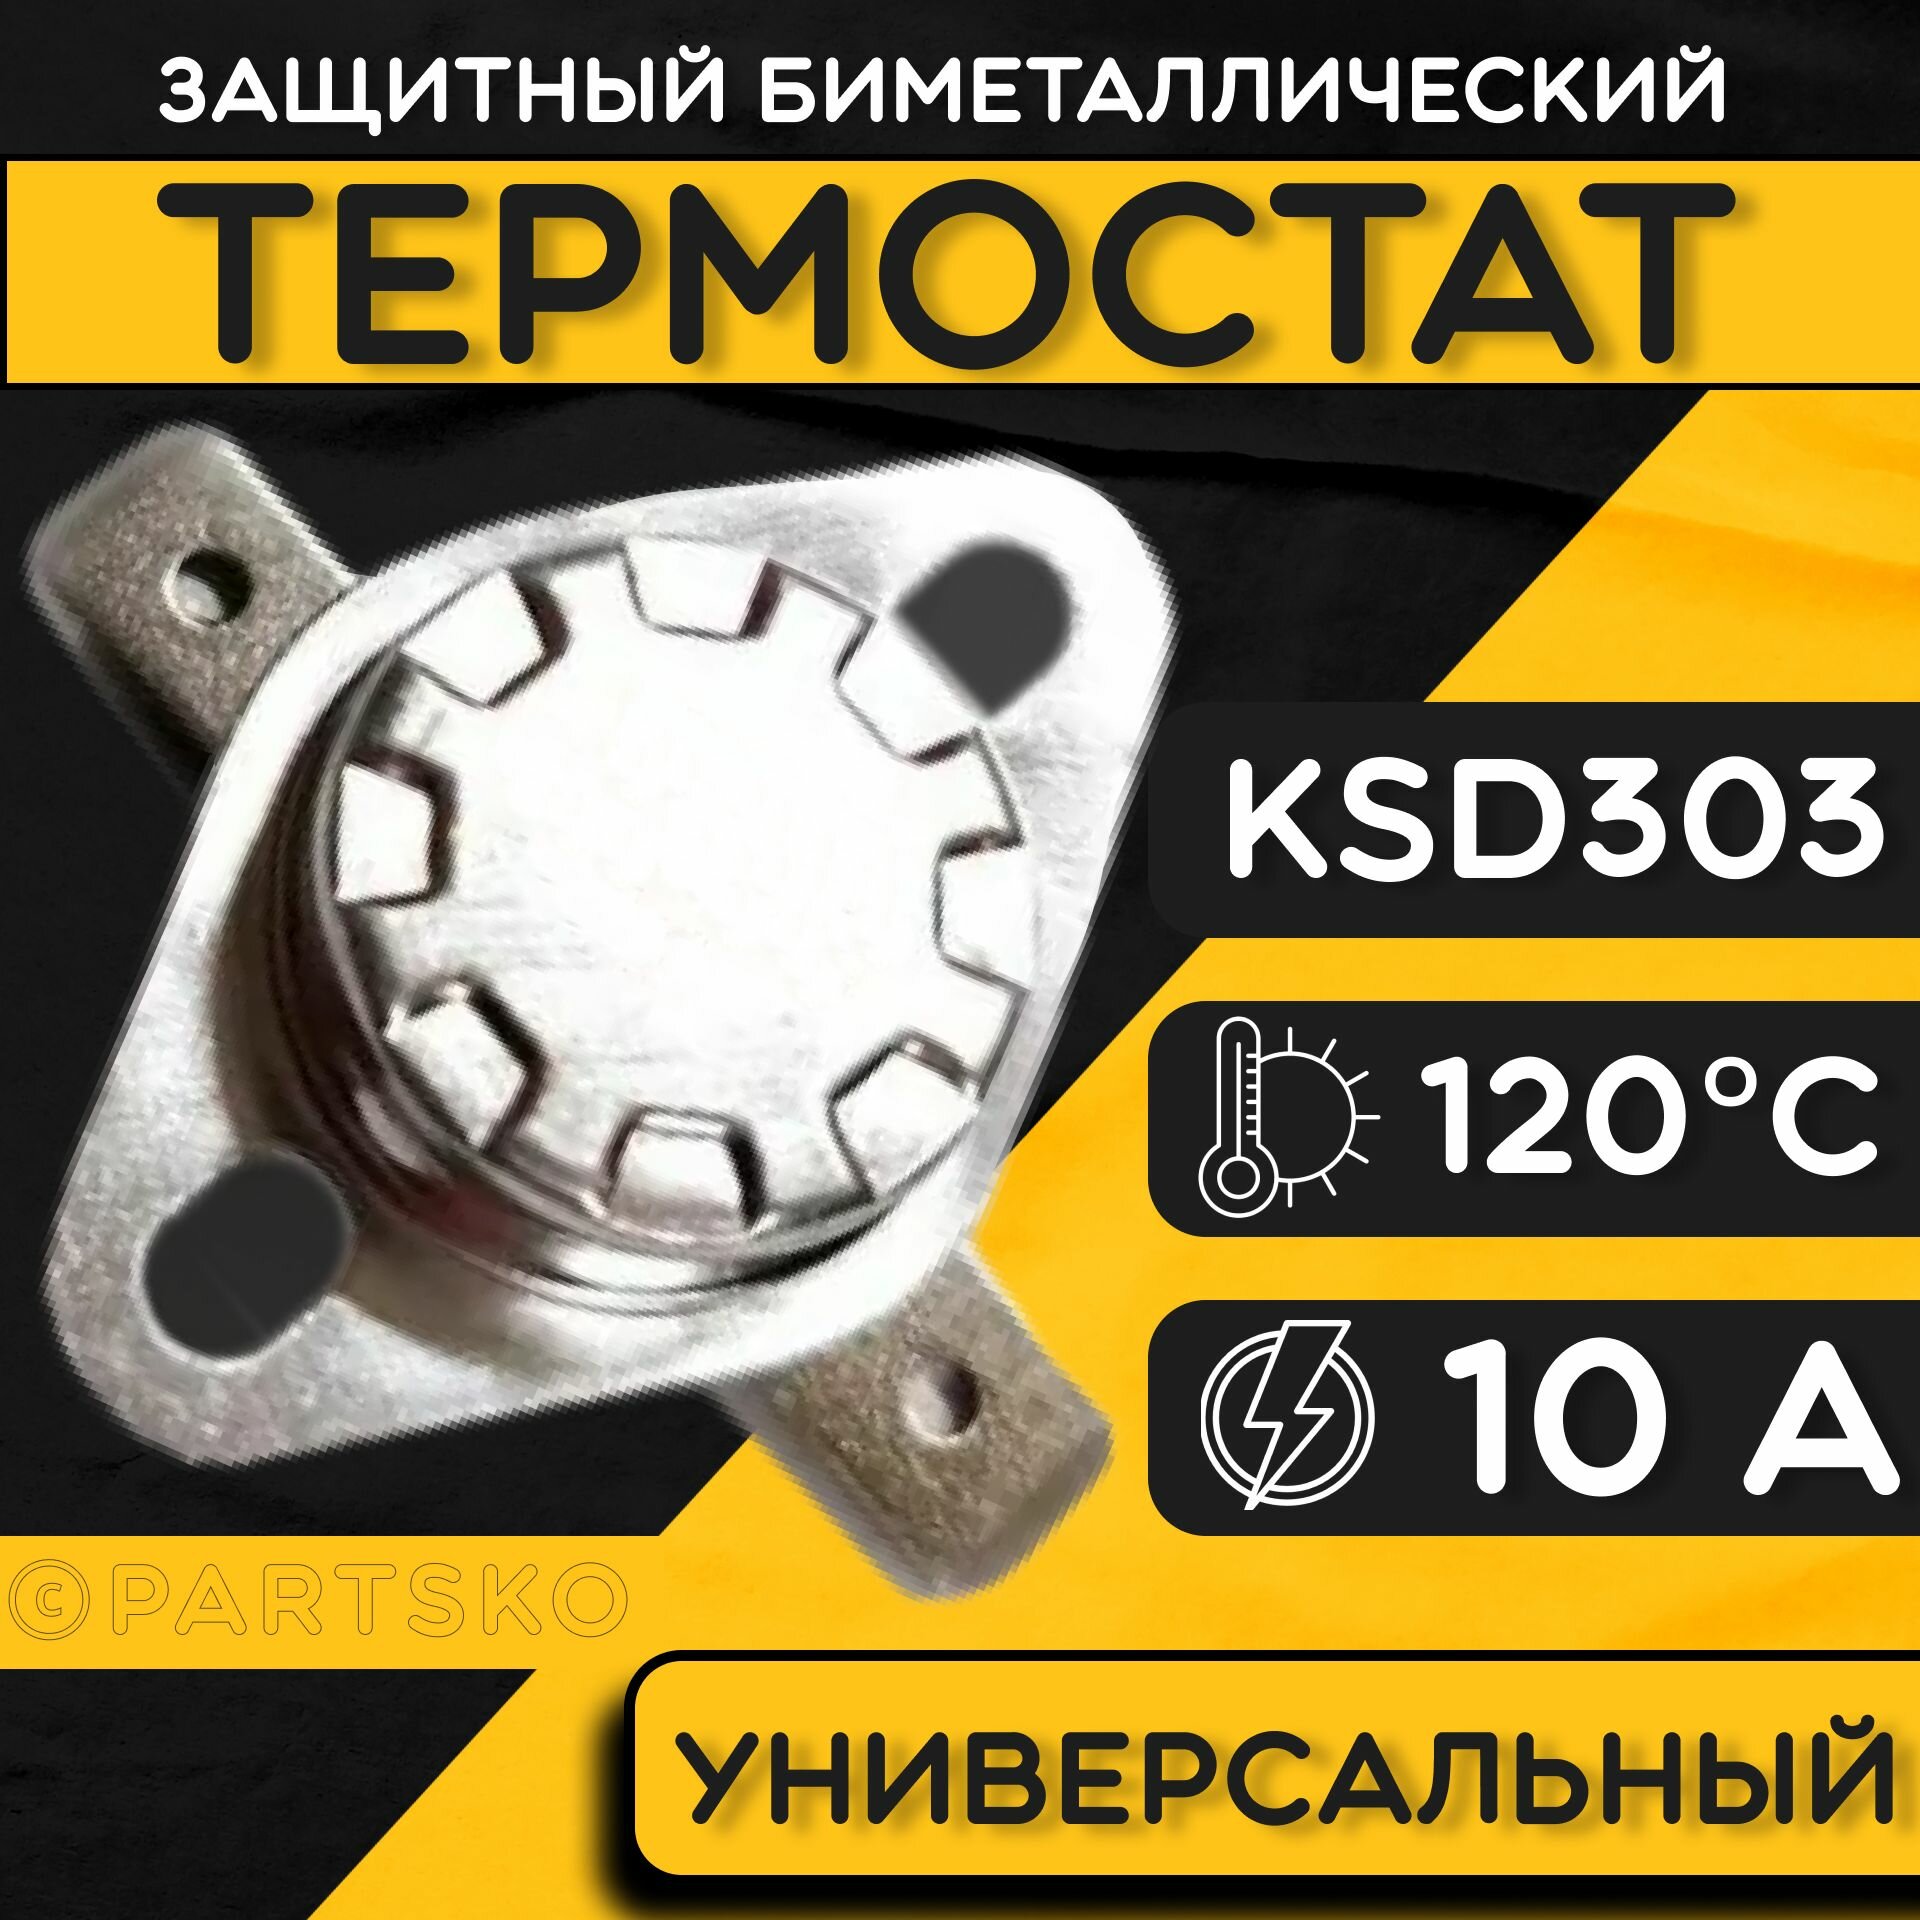 Термостат для водонагревателя биметаллический KSD302, 10A, до 120 градусов. Термодатчик / регулятор температуры универсальный, самовозвратный.